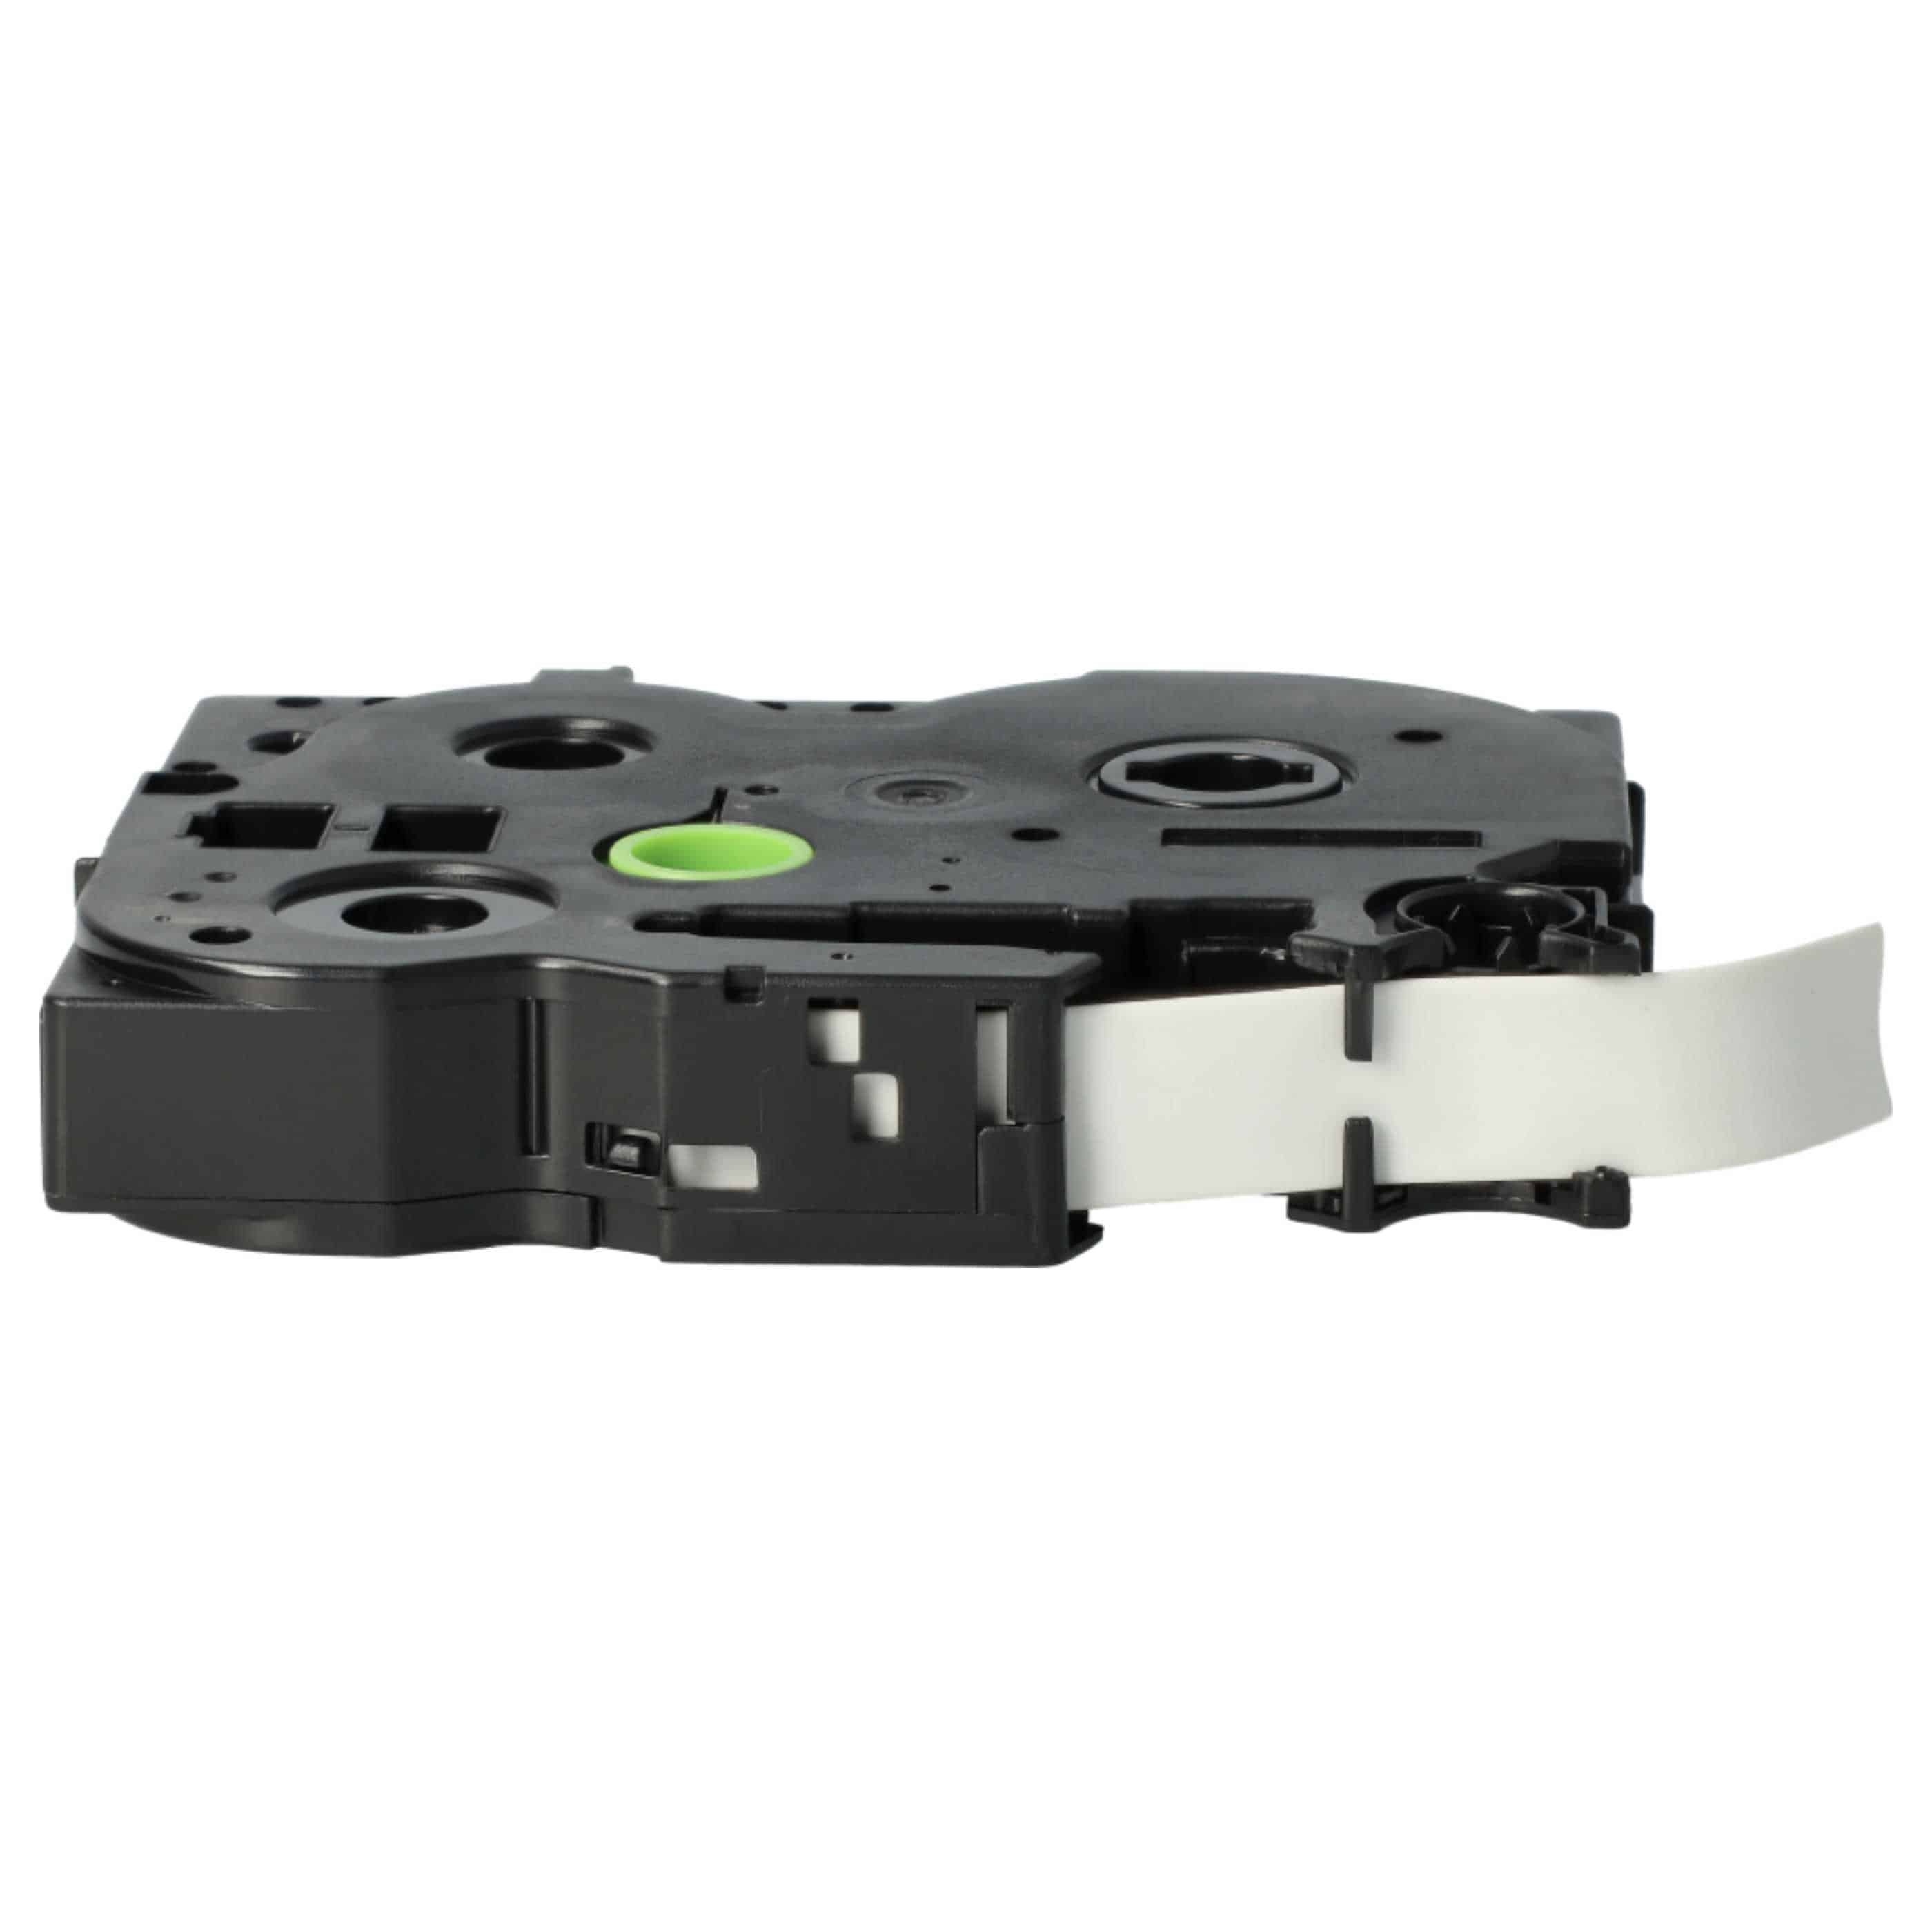 Cassette à ruban remplace Brother AHS-231 - 11,7mm lettrage Noir ruban Blanc, thermorétractable, 11,7 mm